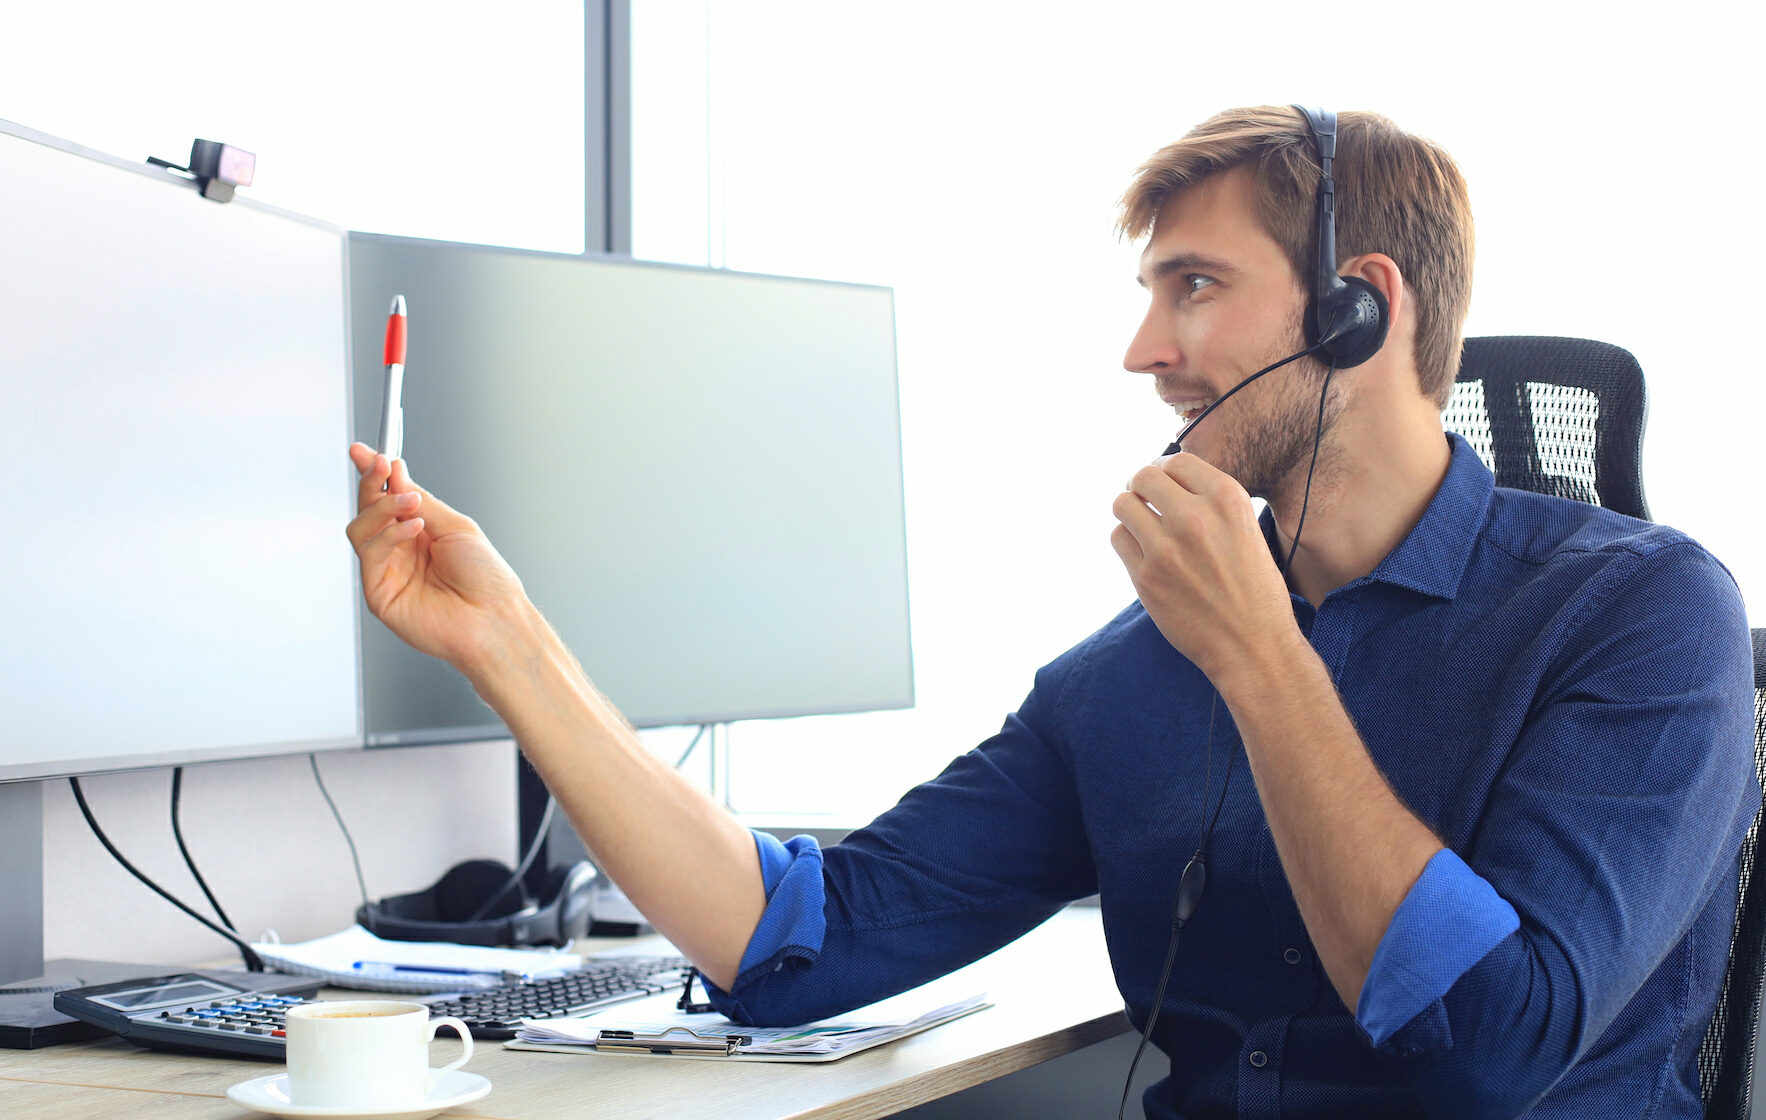 Soporte informático: Hombre joven dando soporte telefónico des de su oficina